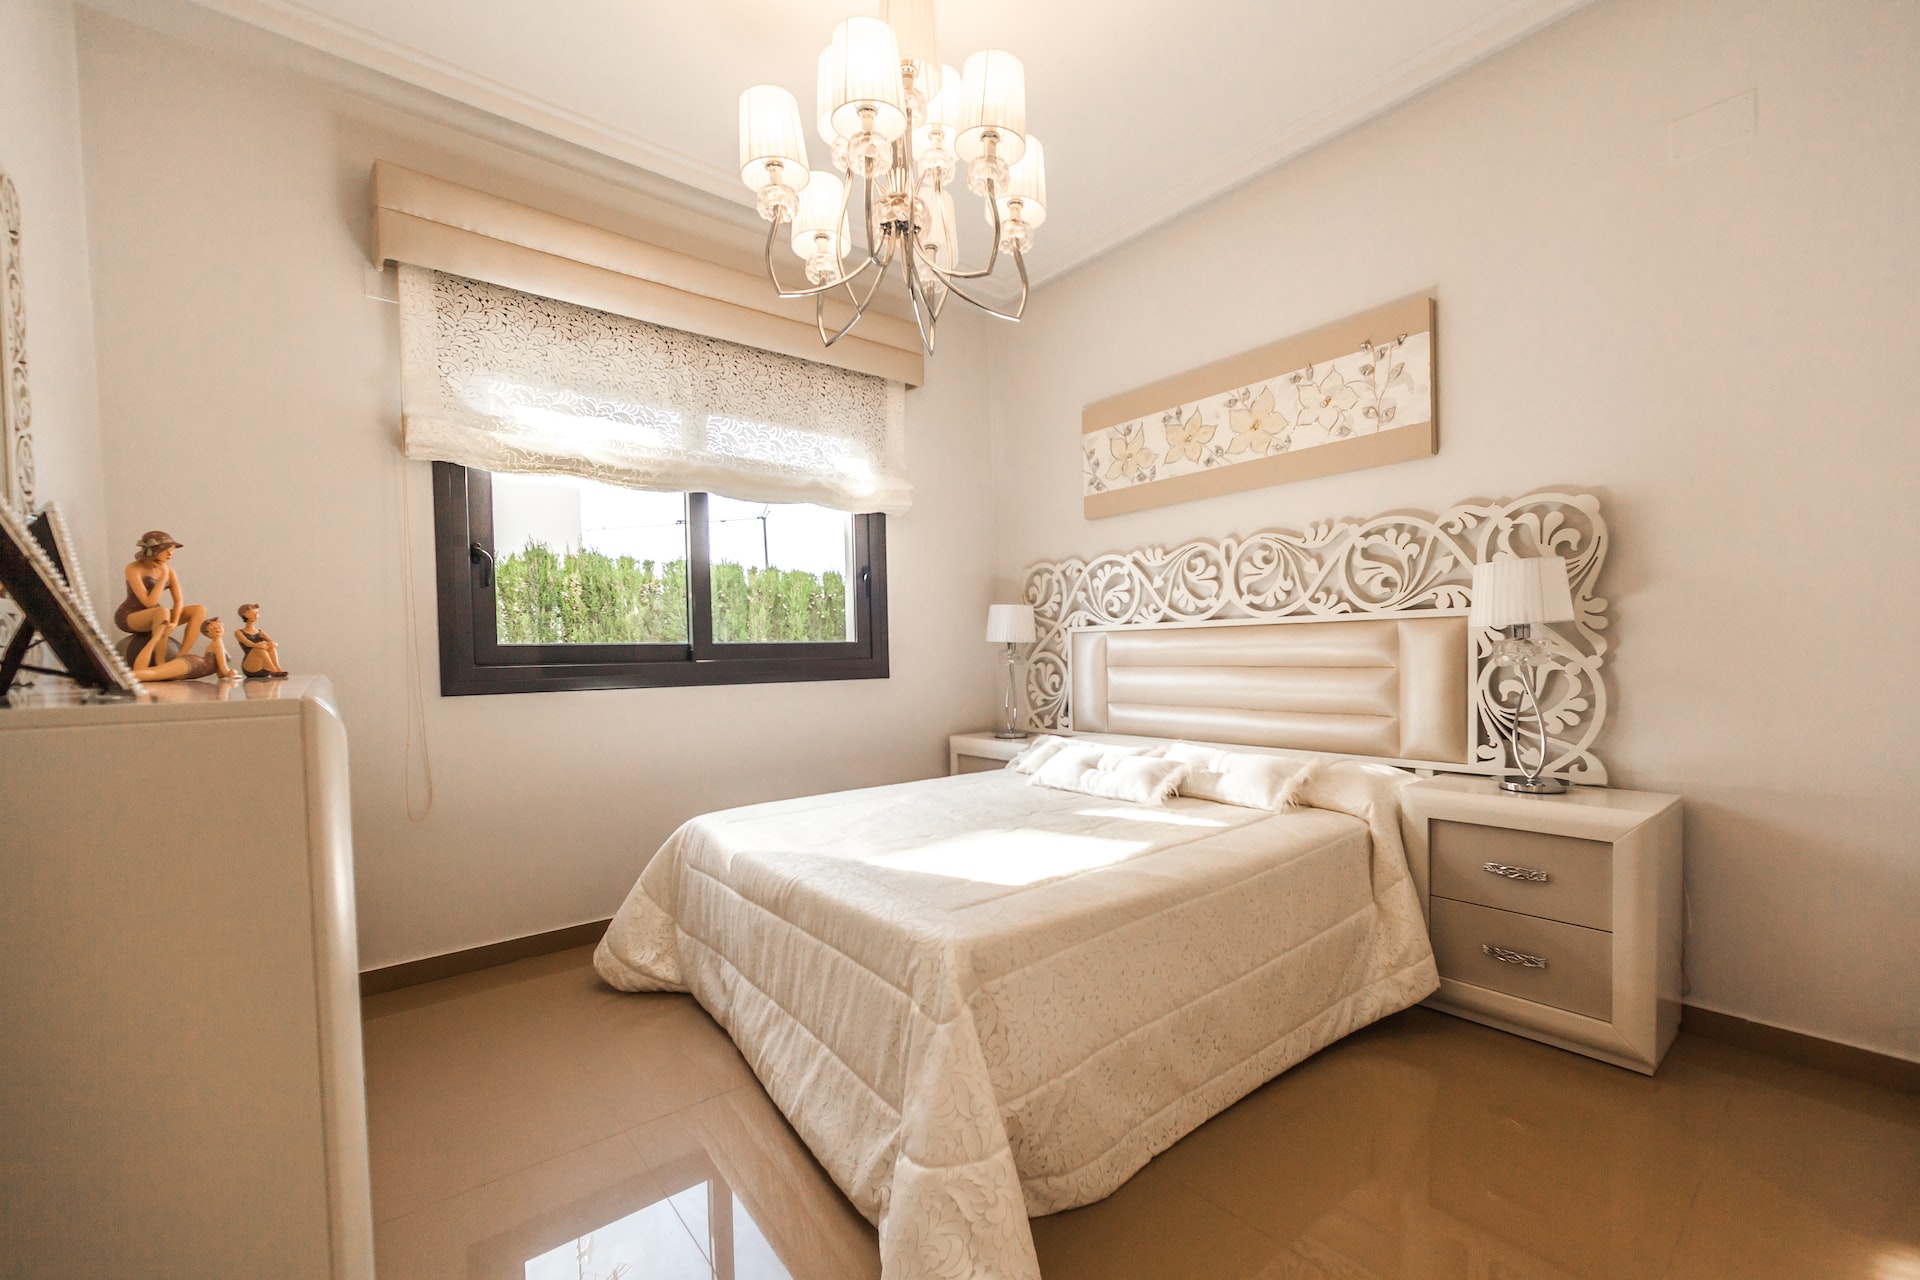 Villa Bedroom Designs 